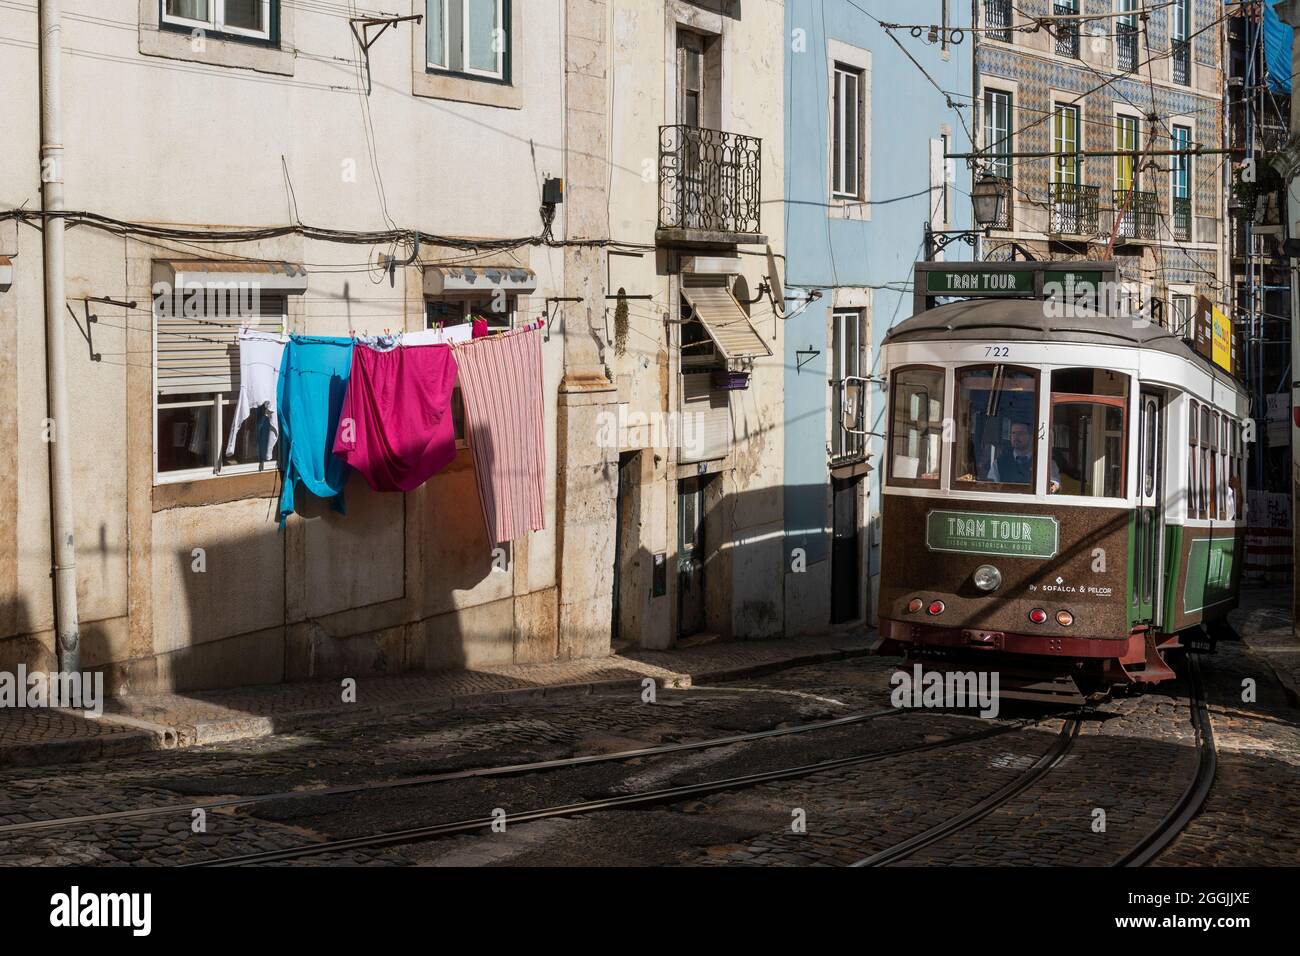 Lisboa, Portugal - 30 de abril de 2015: Un tranvía tradicional en una calle estrecha en el barrio de Alfama, en la ciudad de Lisboa, Portugal. Foto de stock